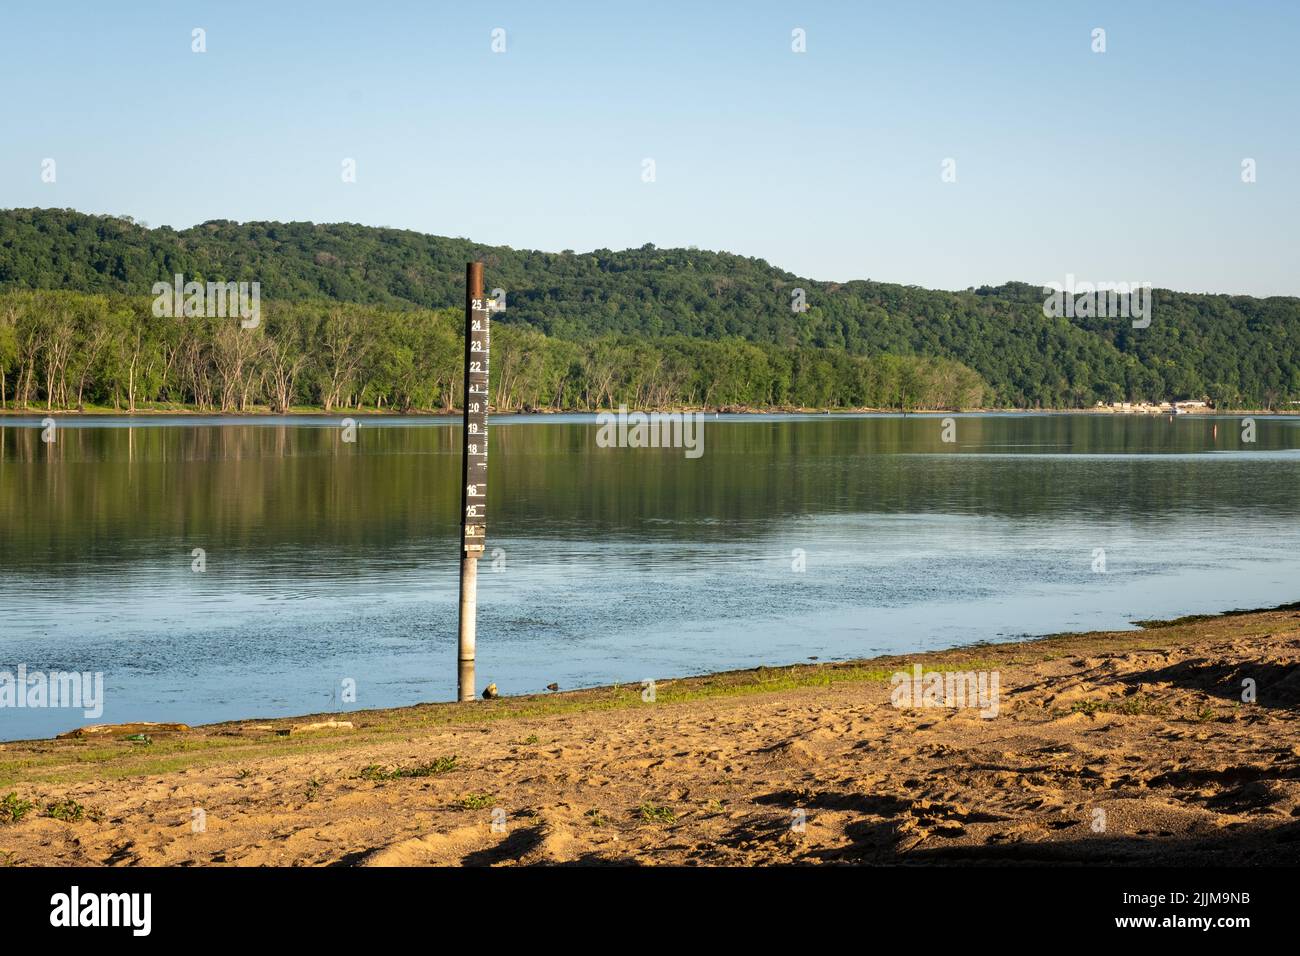 Indicatore del livello dell'acqua, fiume Mississippi, Prairie du Chien, USA. Questo indicatore consente di monitorare il livello dell'acqua del fiume. Foto Stock